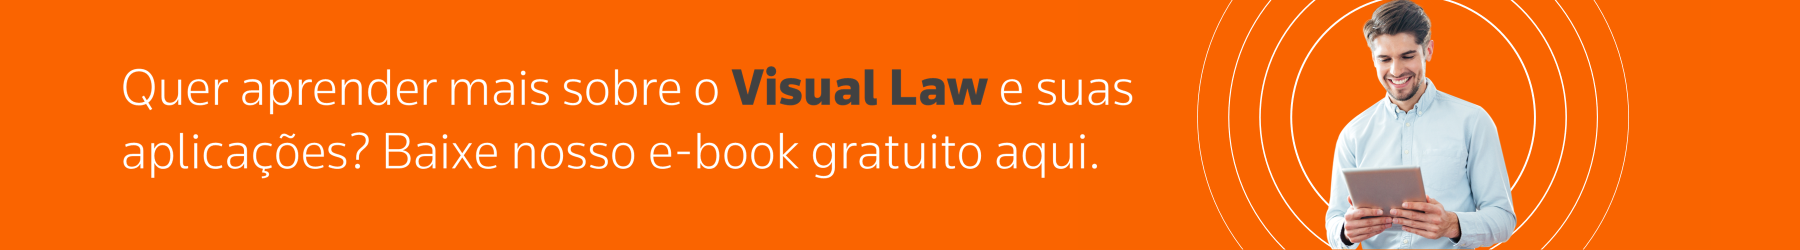 Quer aprender mais sobre o Visual Law e suas aplicações? Baixe nosso e-book gratuito aqui.